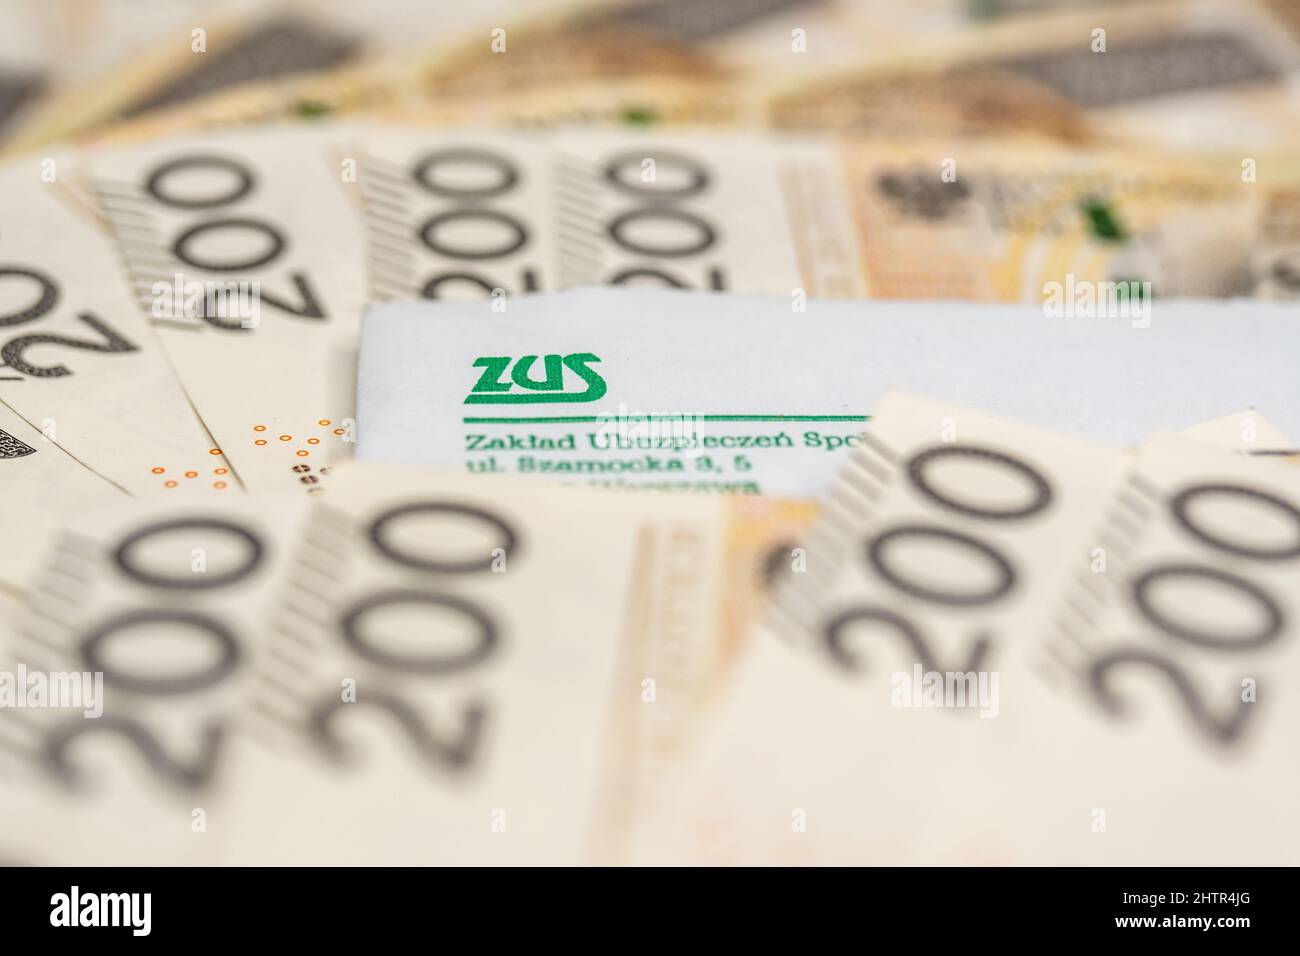 Fotografia editoriale illustrativa di Zakład Ubezpieczeń Społecznych ZUS - concetto di Ufficio nazionale delle assicurazioni e delle pensioni polacco. Foto Stock